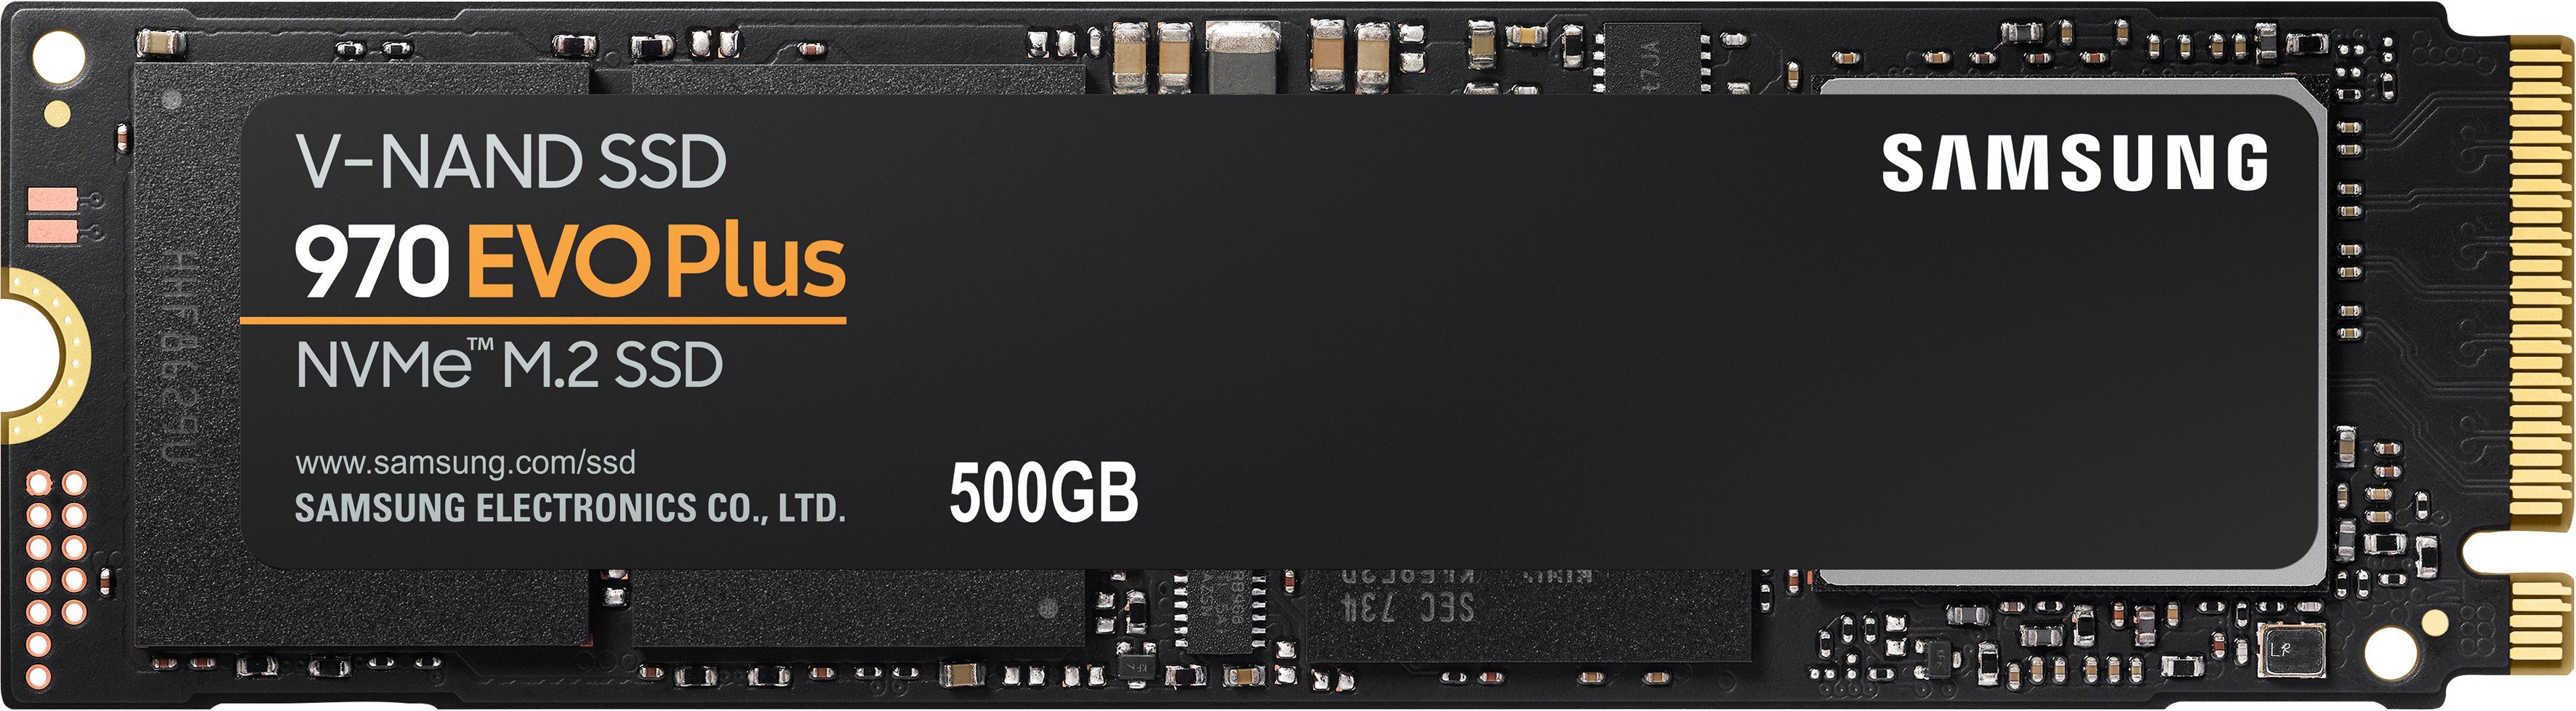 Samsung 970 EVO Plus NVMe™ M.2 1 TB interne SSD (500 GB) 3500 MB/S Lesegeschwindigkeit, 3300 MB/S Schreibgeschwindigkeit